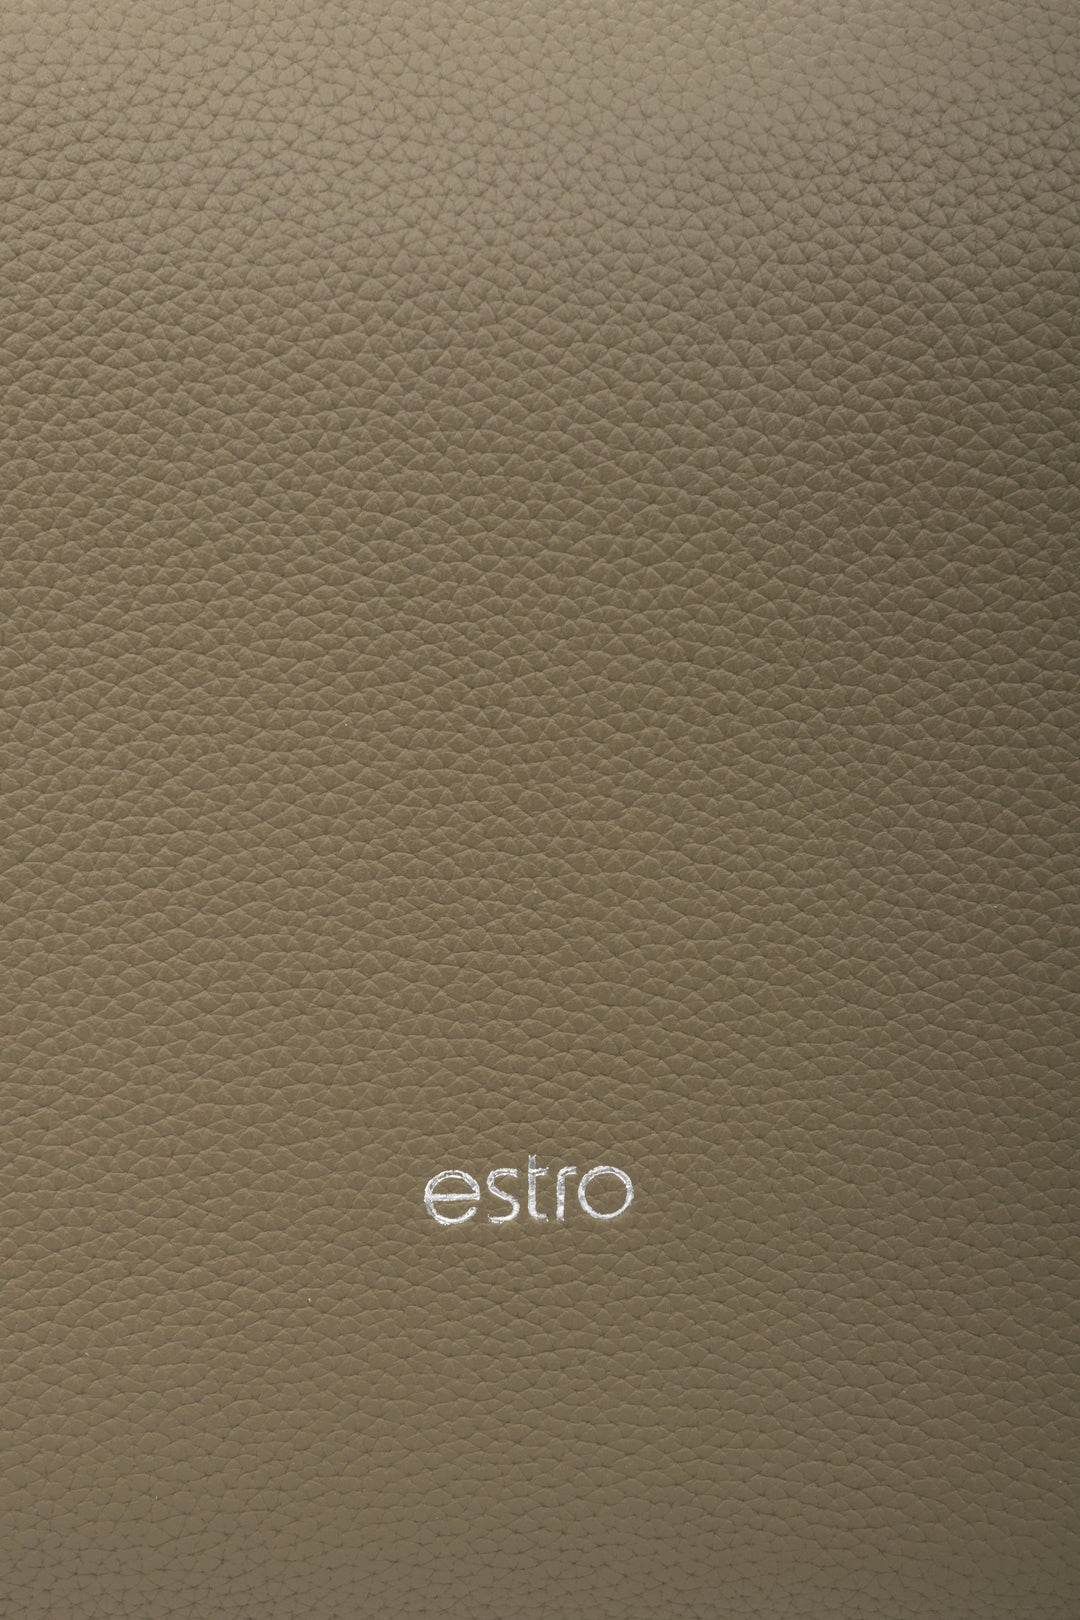 Damska torebka ze skóry naturalnej typu półksiężyc brązowoszara Estro - zbliżenie na detale.